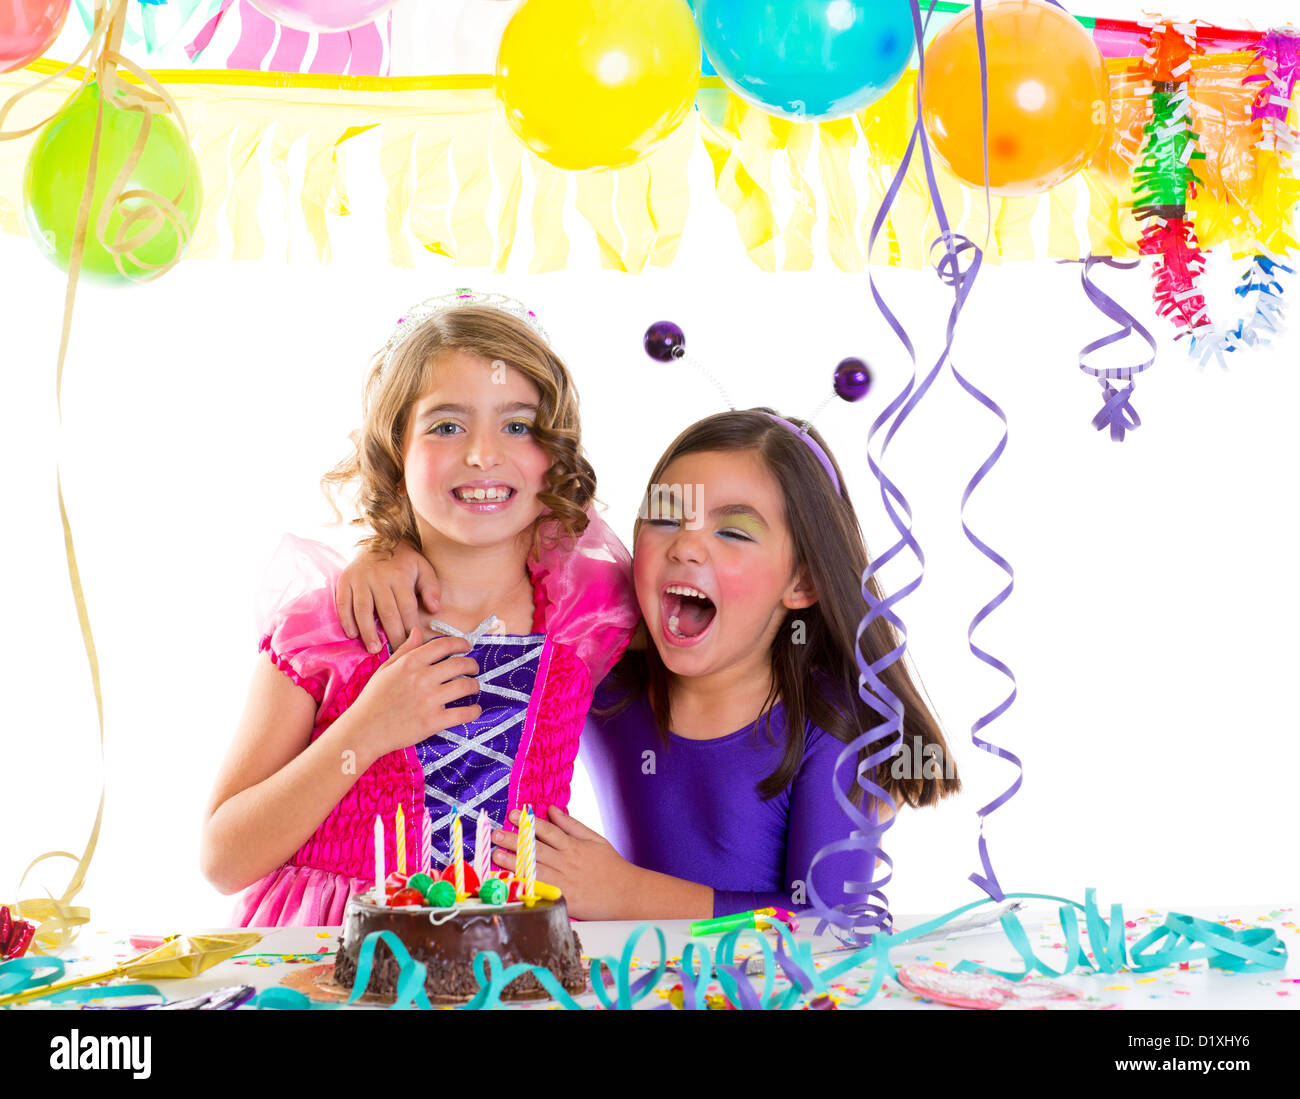 Kinder glücklich Hug in Geburtstagsparty lachend mit Luftballons Girlanden und Kerzen Kuchen Stockfoto